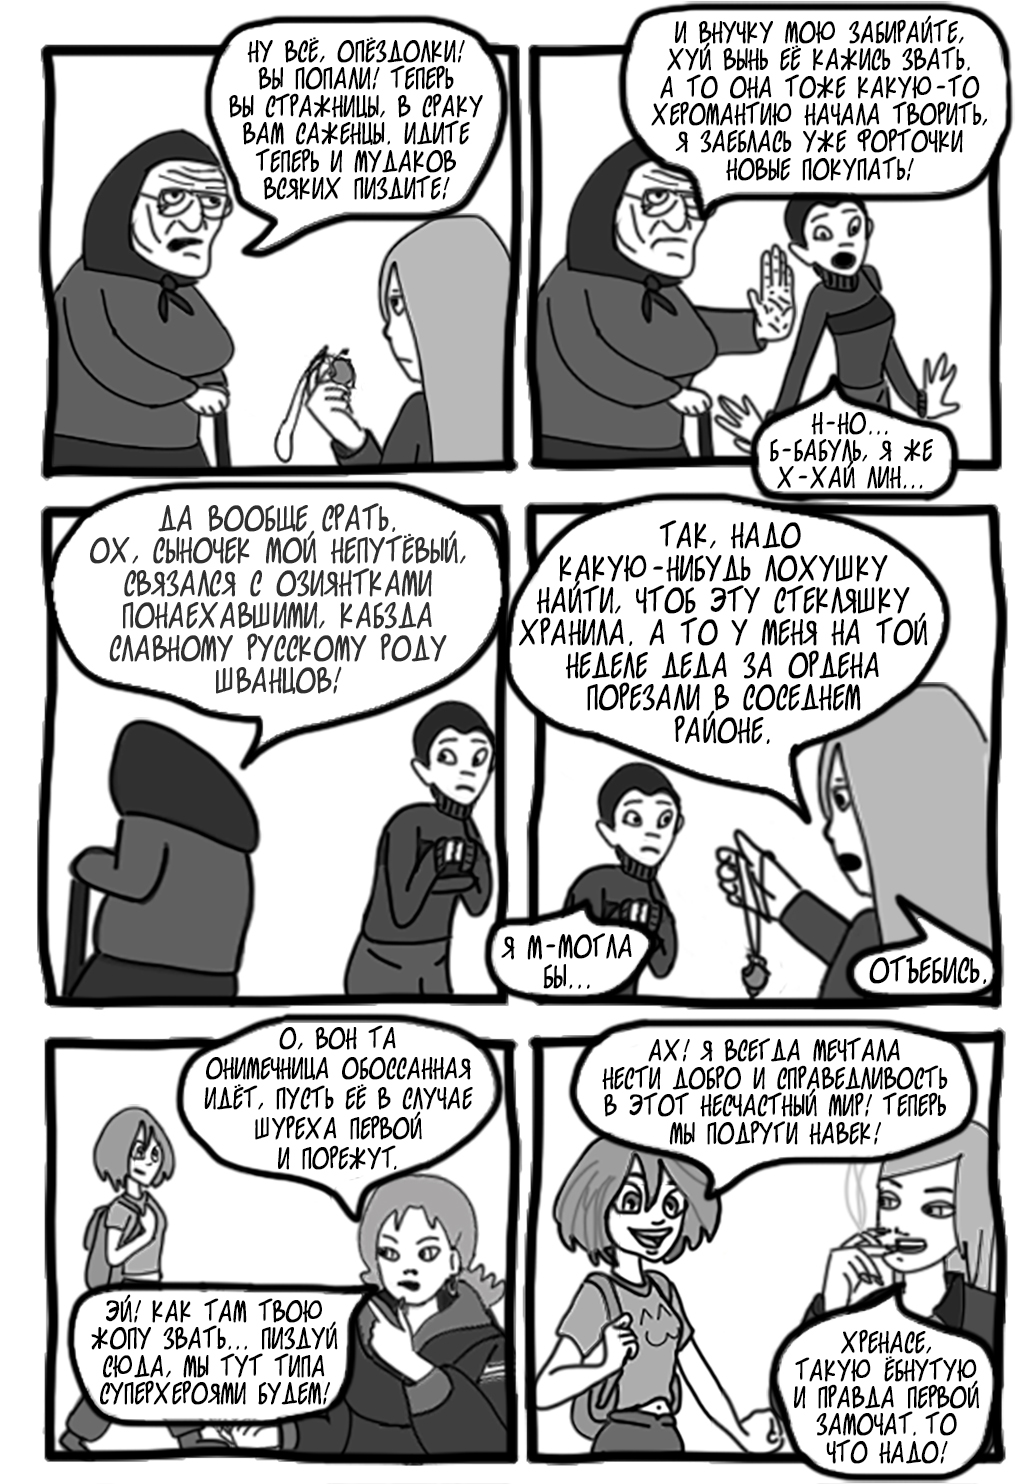 Комикс П.Т.У.шницы Кондракара (тупая 18+ пародия на мультфильм W.I.T.C.H.): выпуск №2